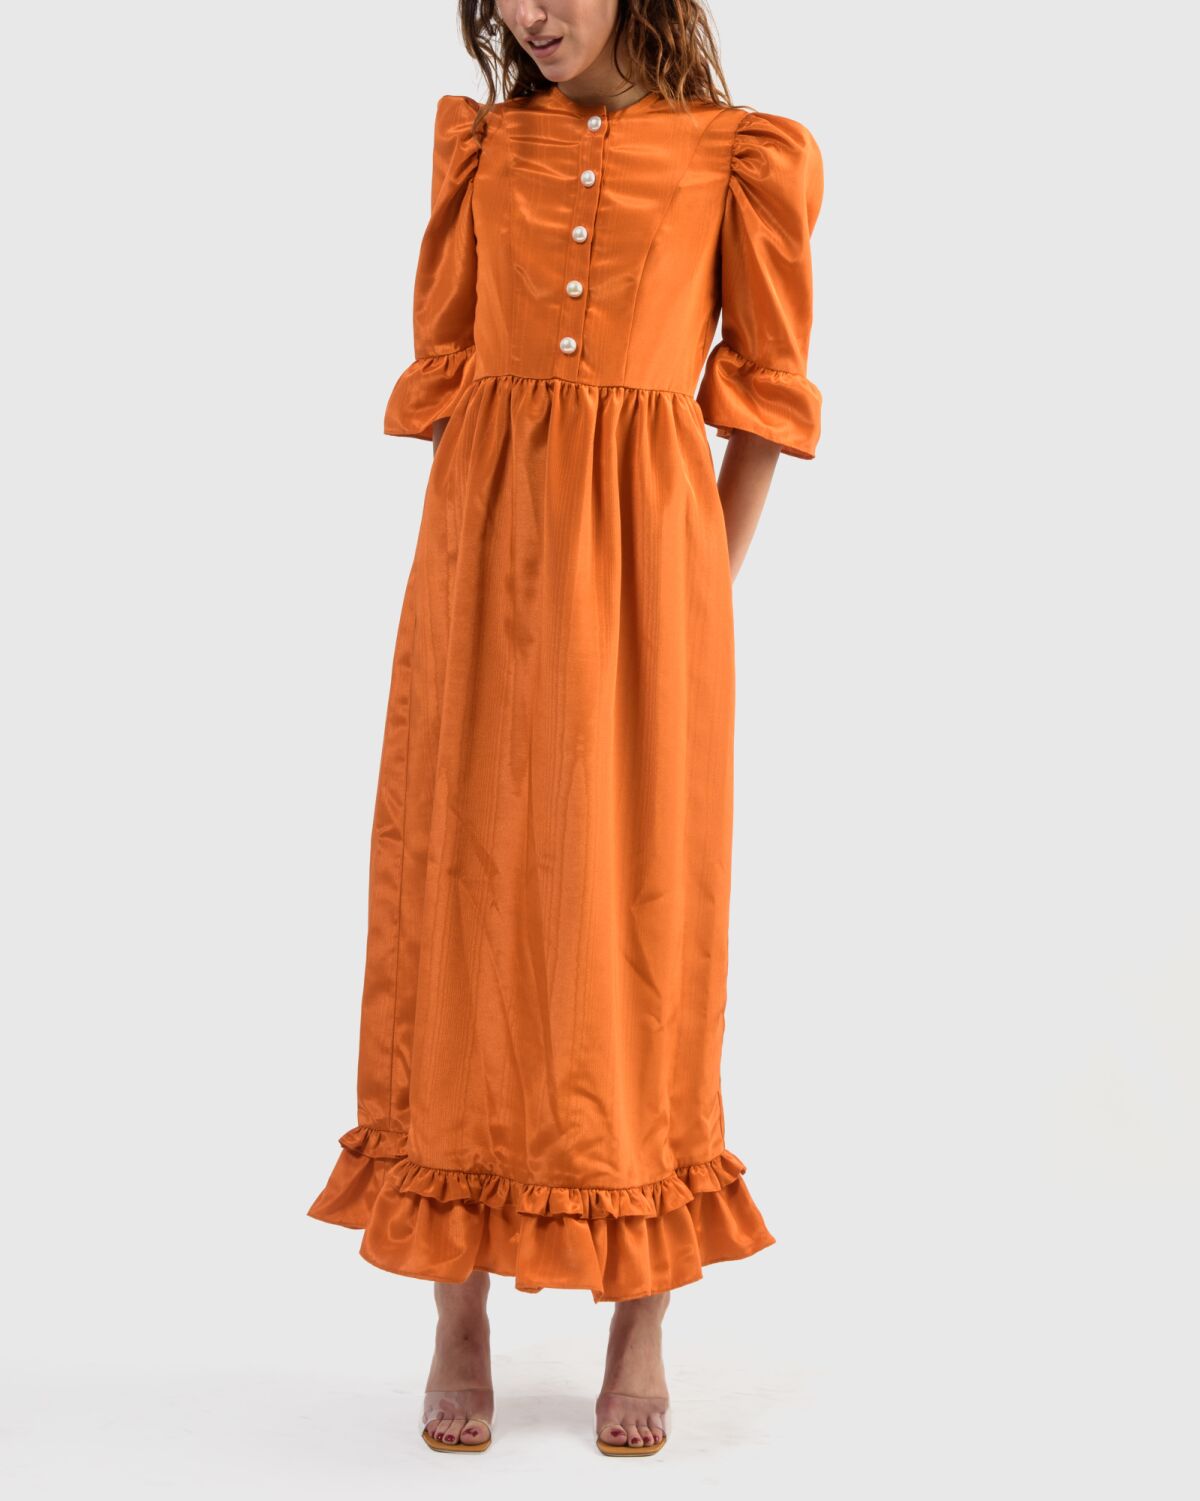 Button-up long prairie dress in orange by Batsheva.